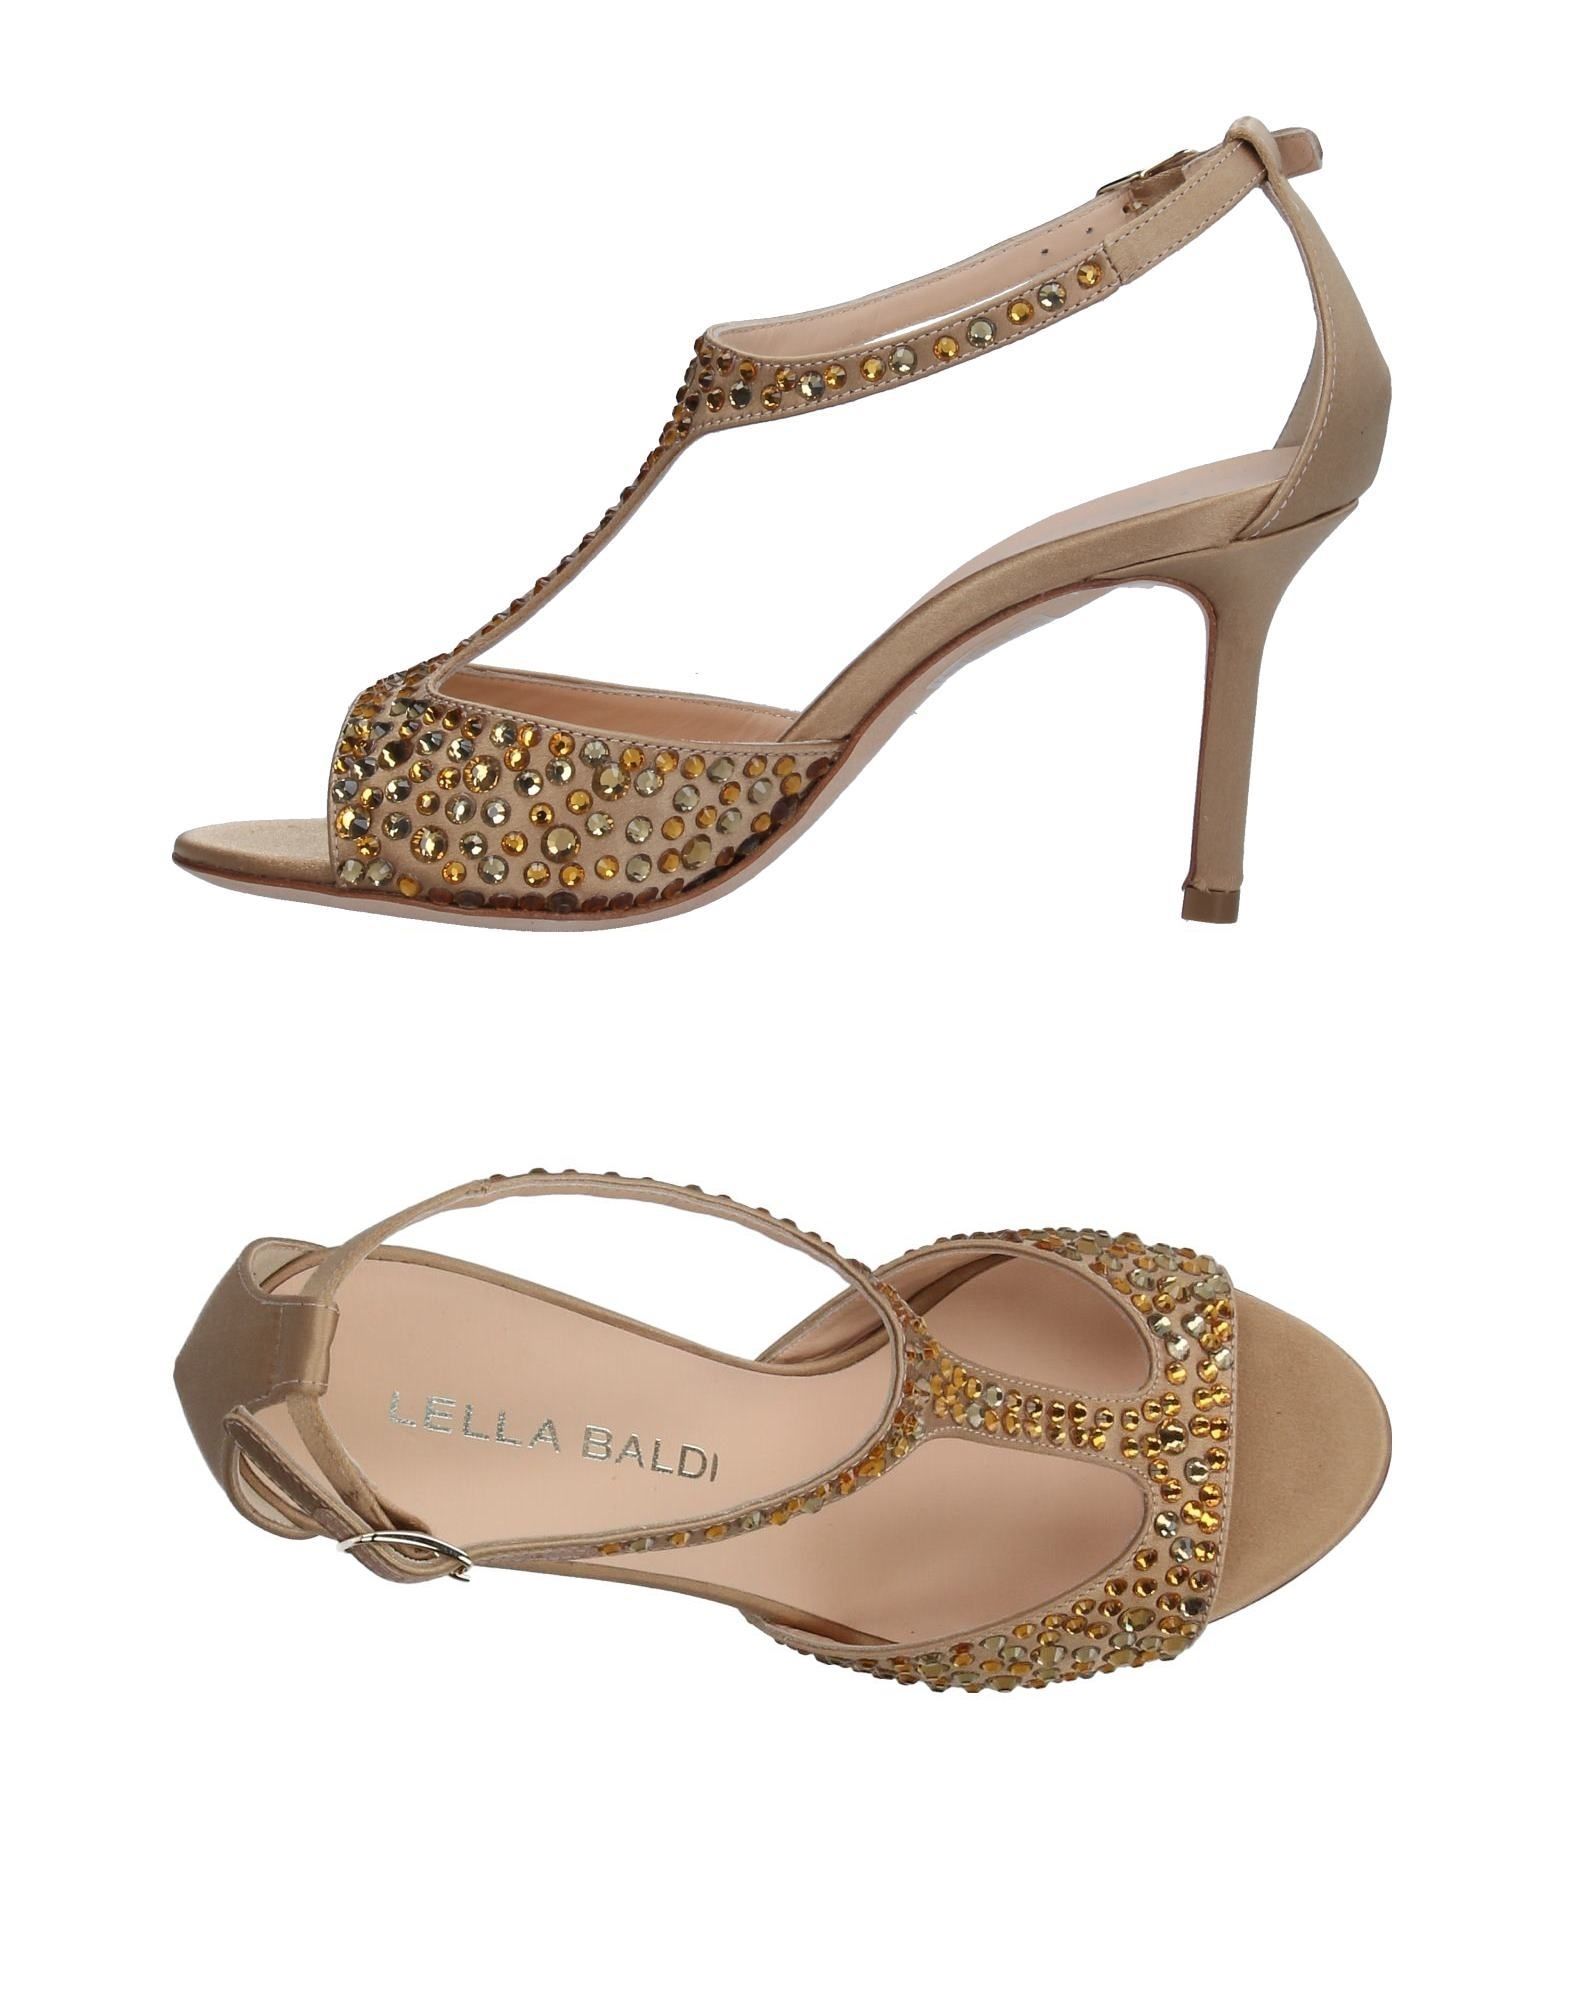 Lella Baldi Sandals | Shop at Ebates